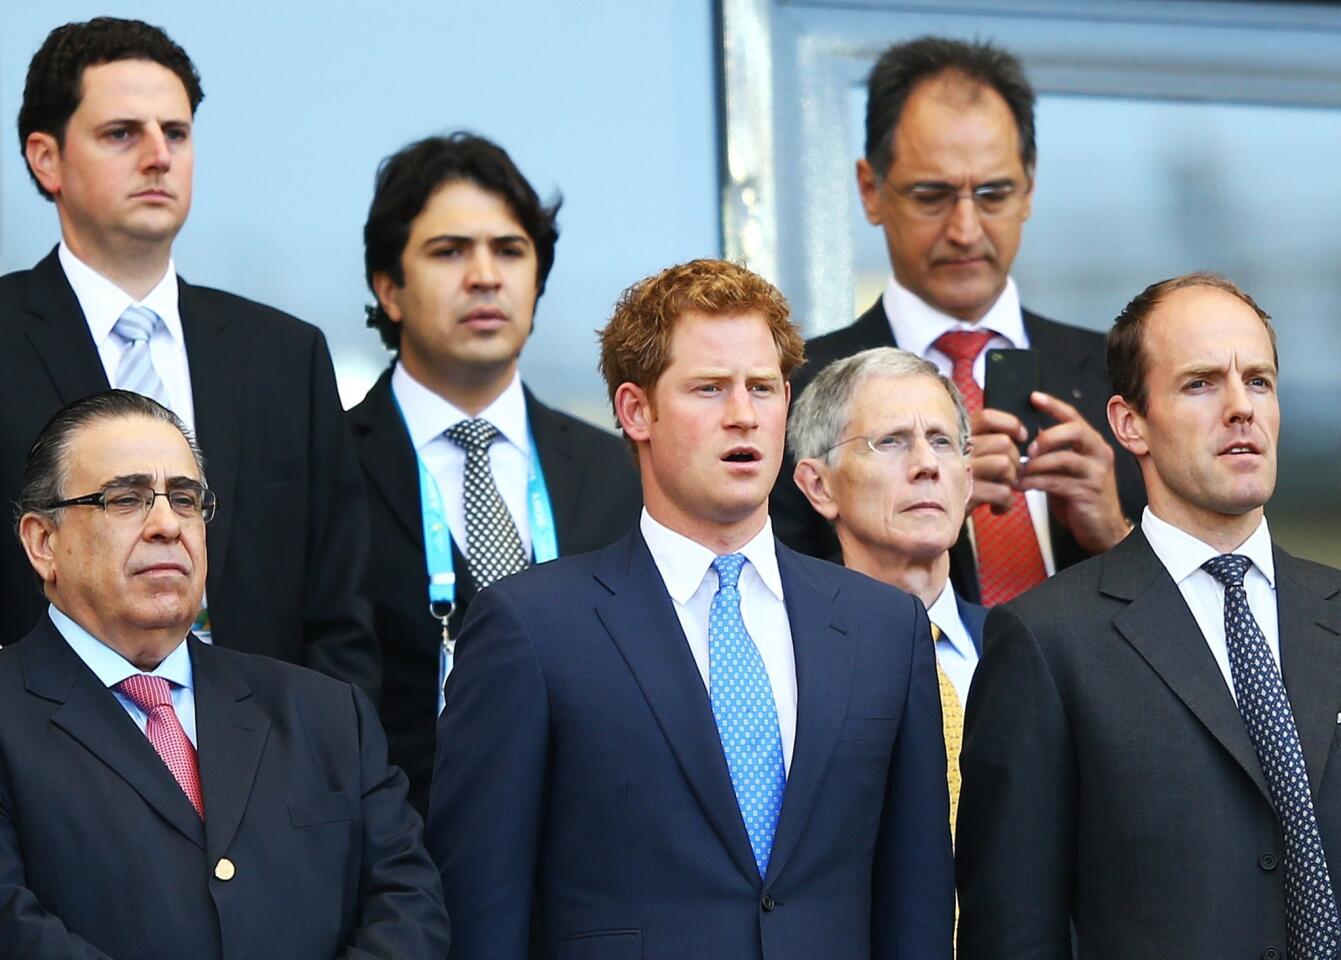 Prince Harry visits Brazil | Day 2